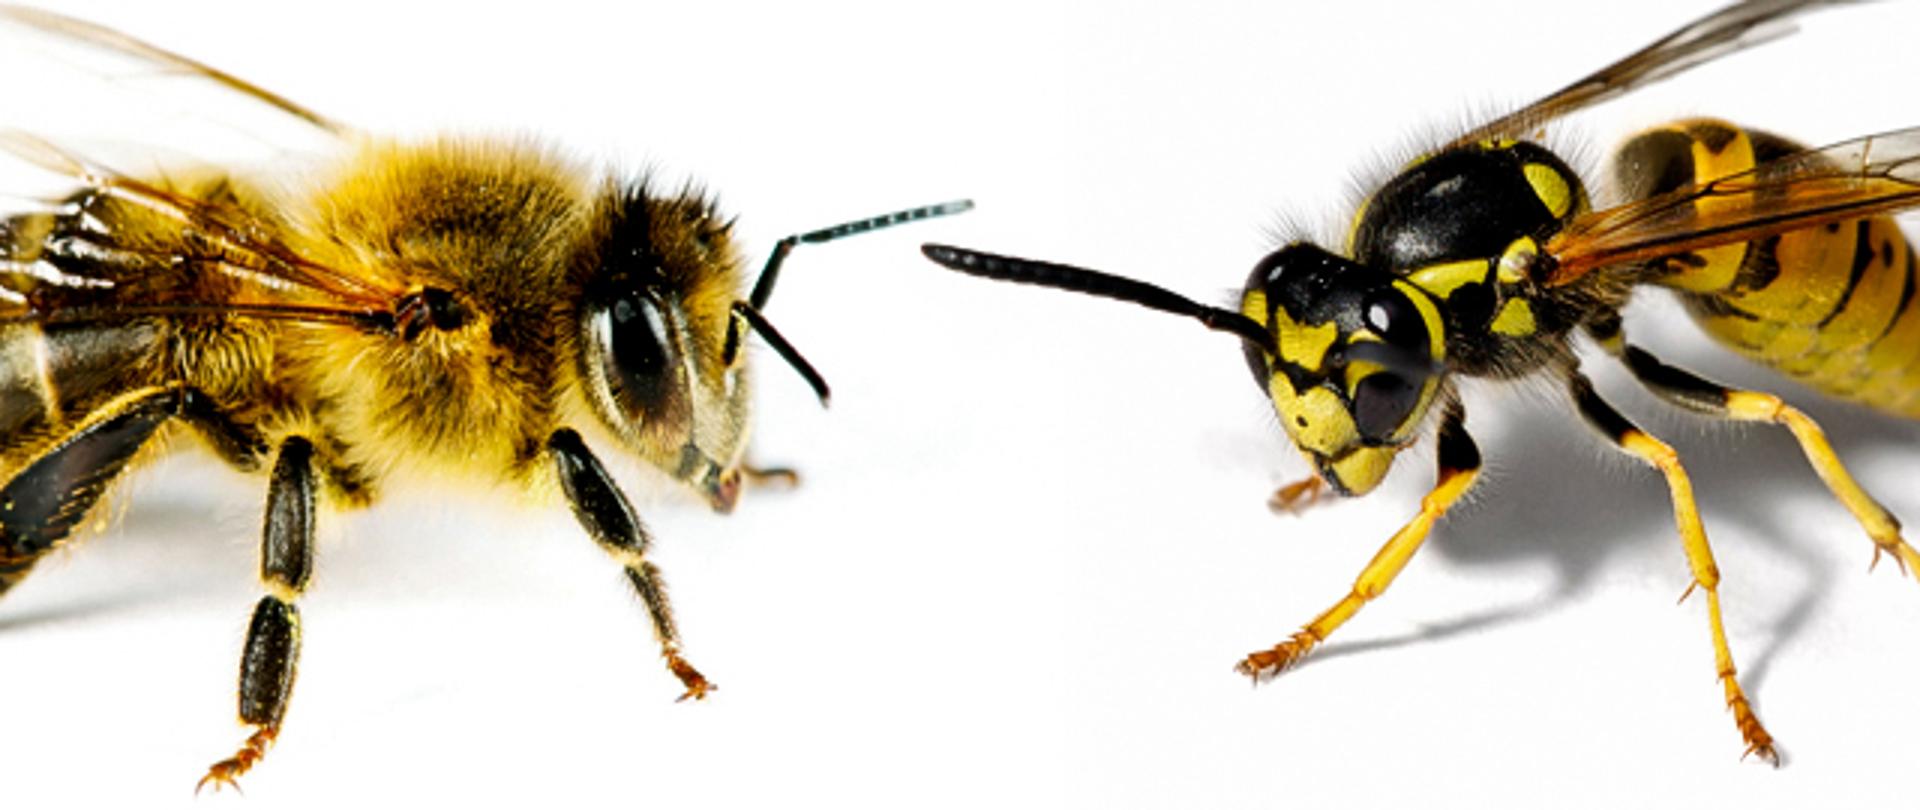 zdjęcie pszczoły(po lewej stronie) i osy (po prawej stronie) na białym tle